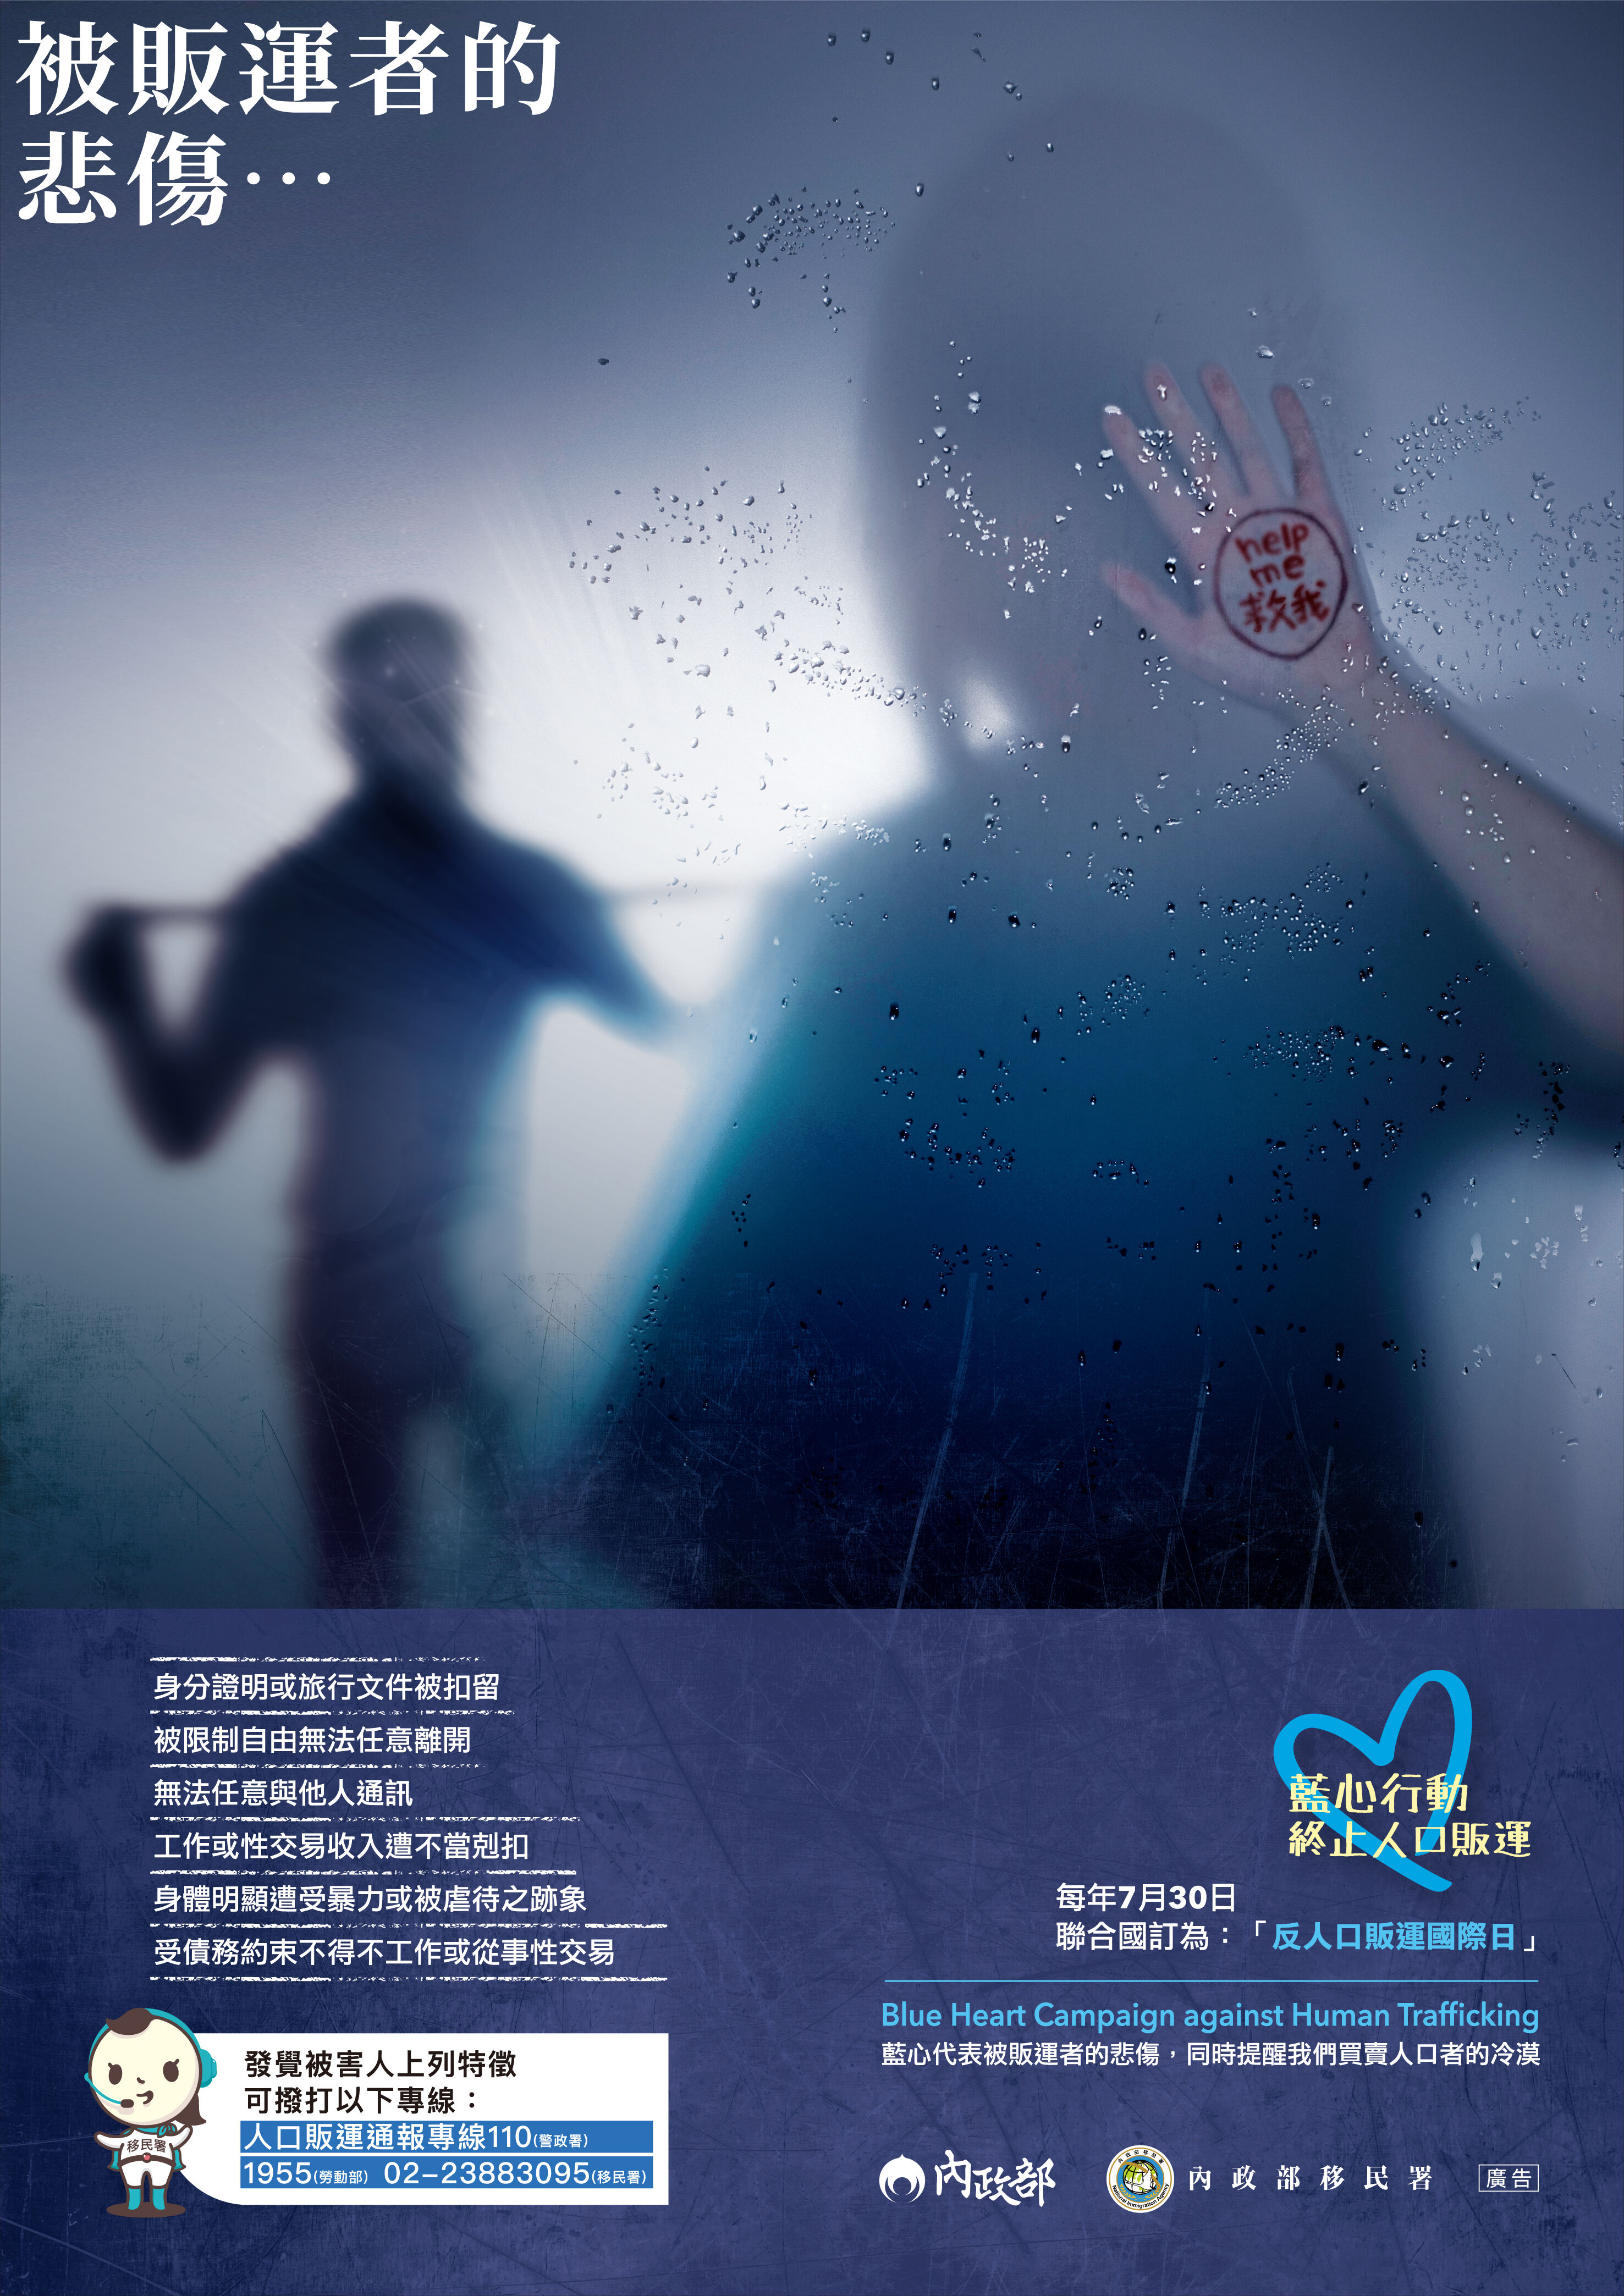 防制人口販運宣導海報-辨識及通報-中文